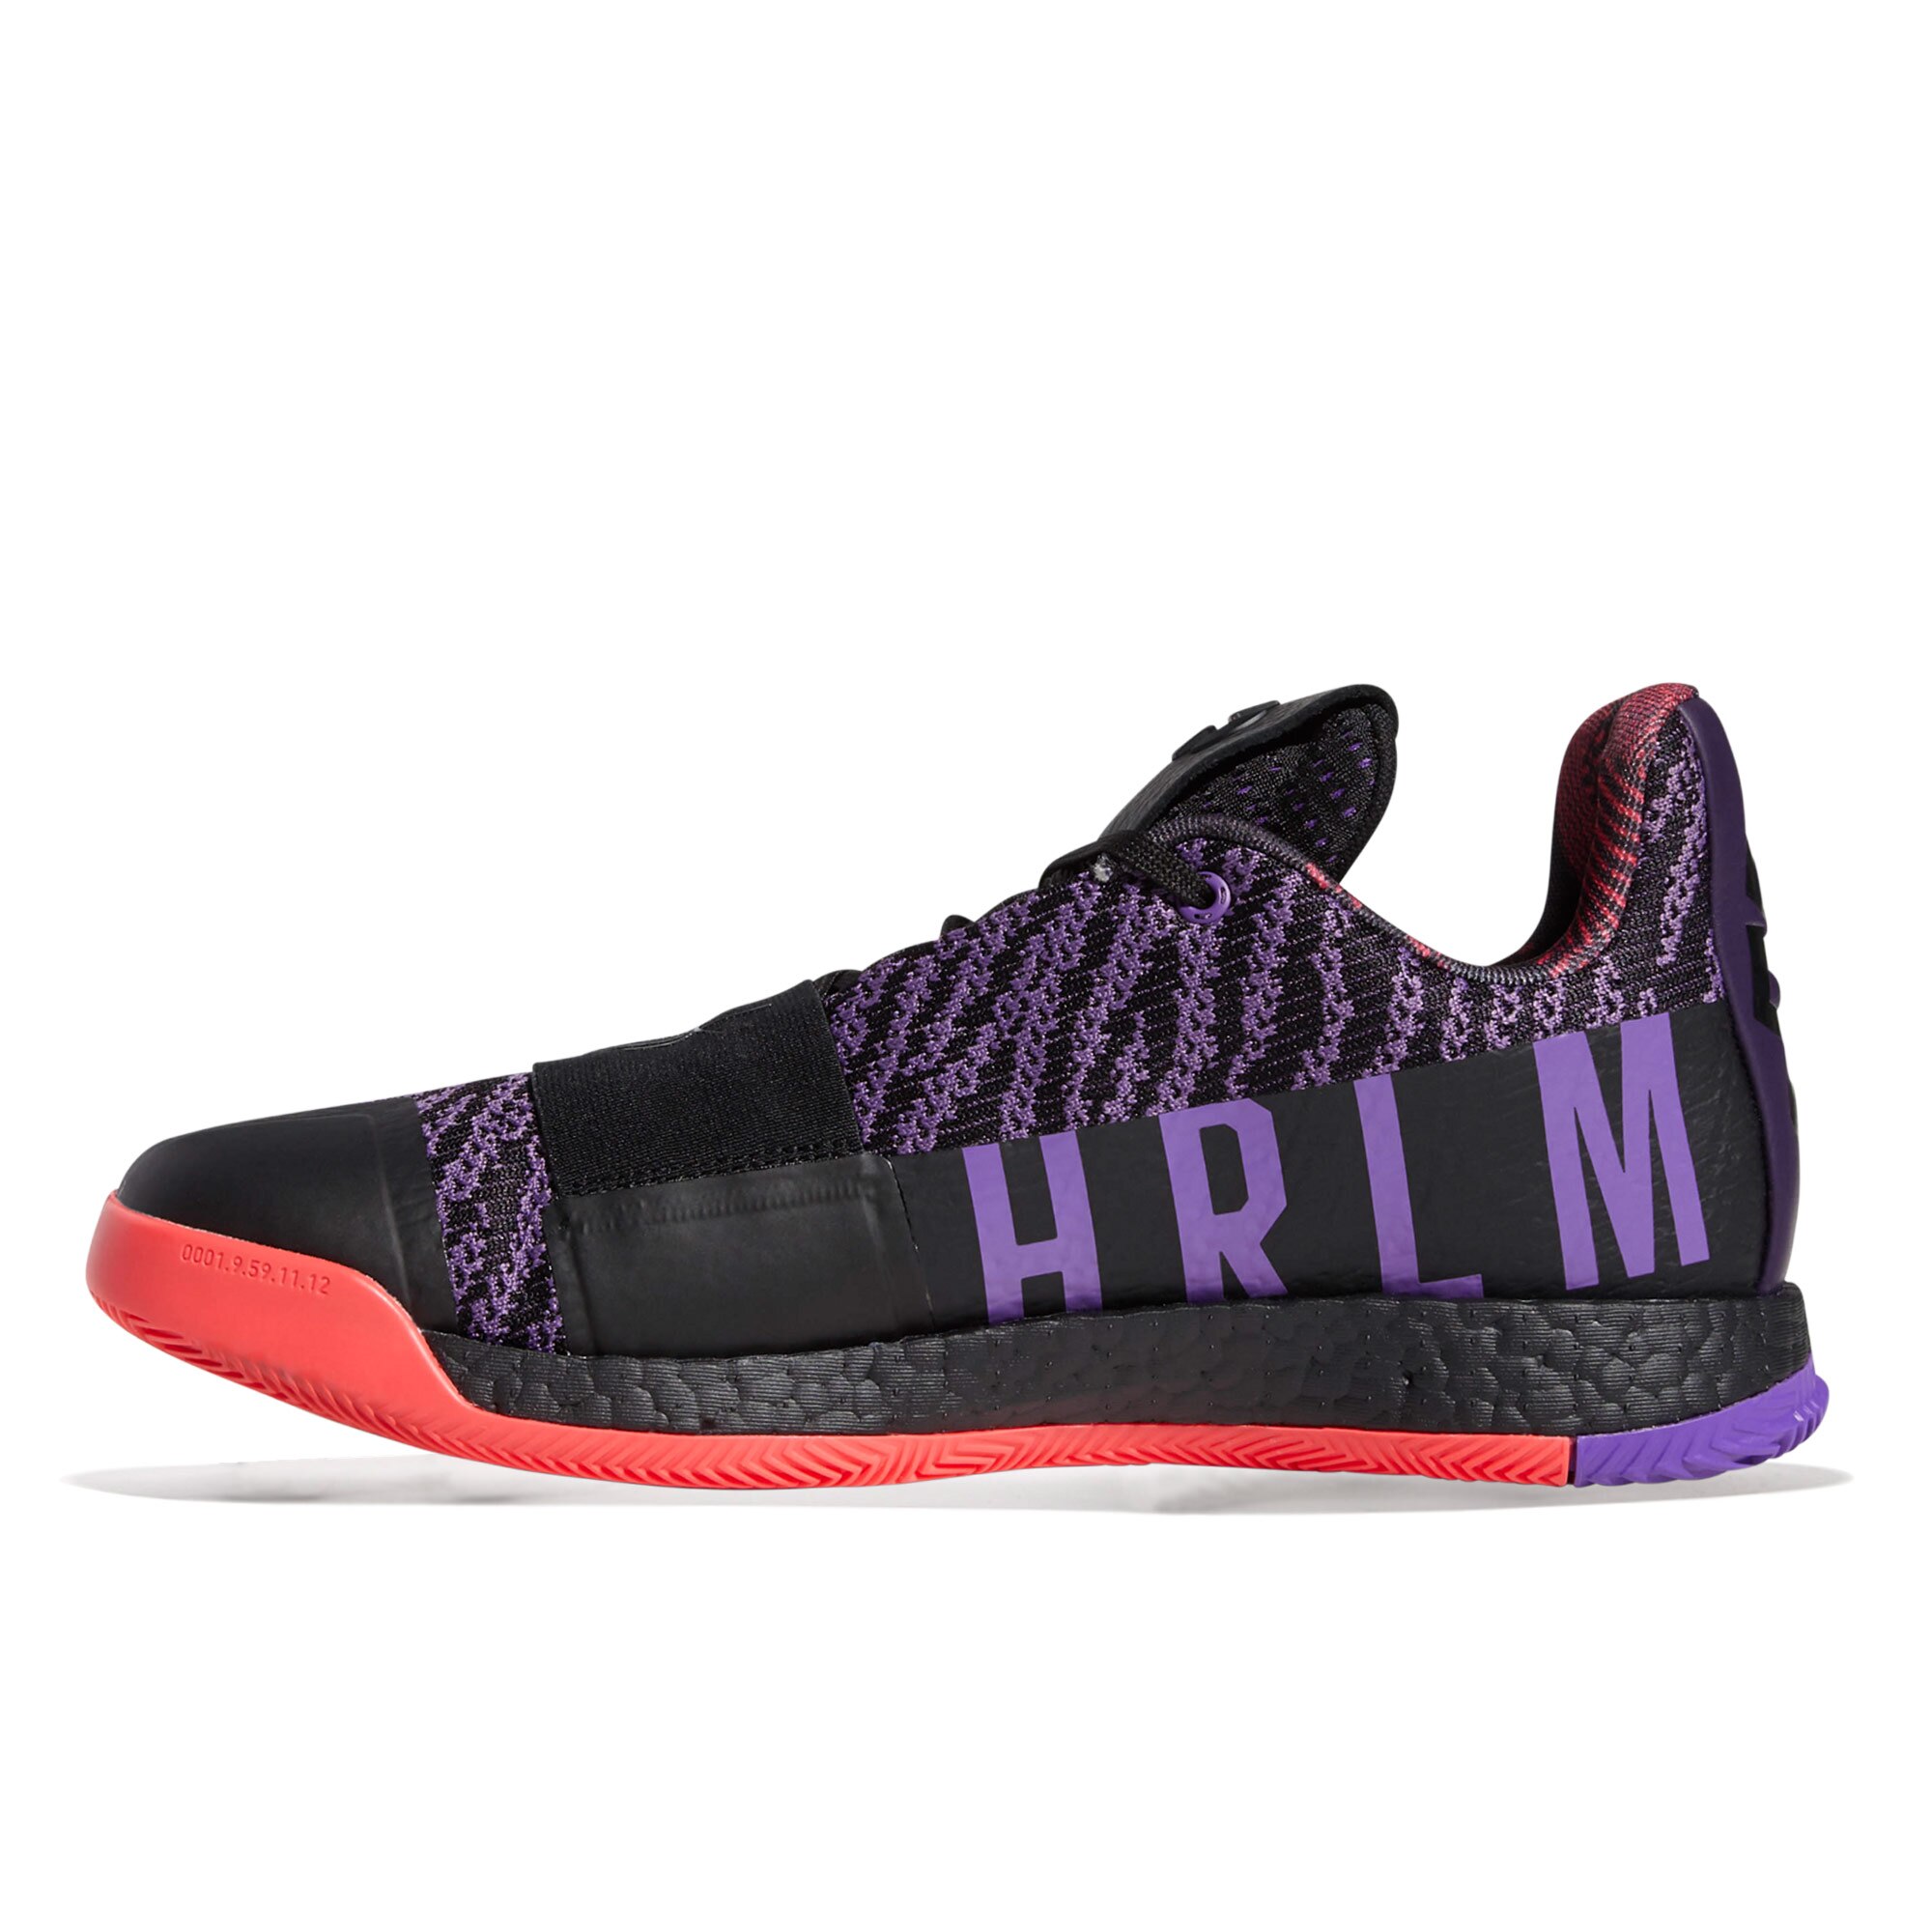 james harden shoes purple